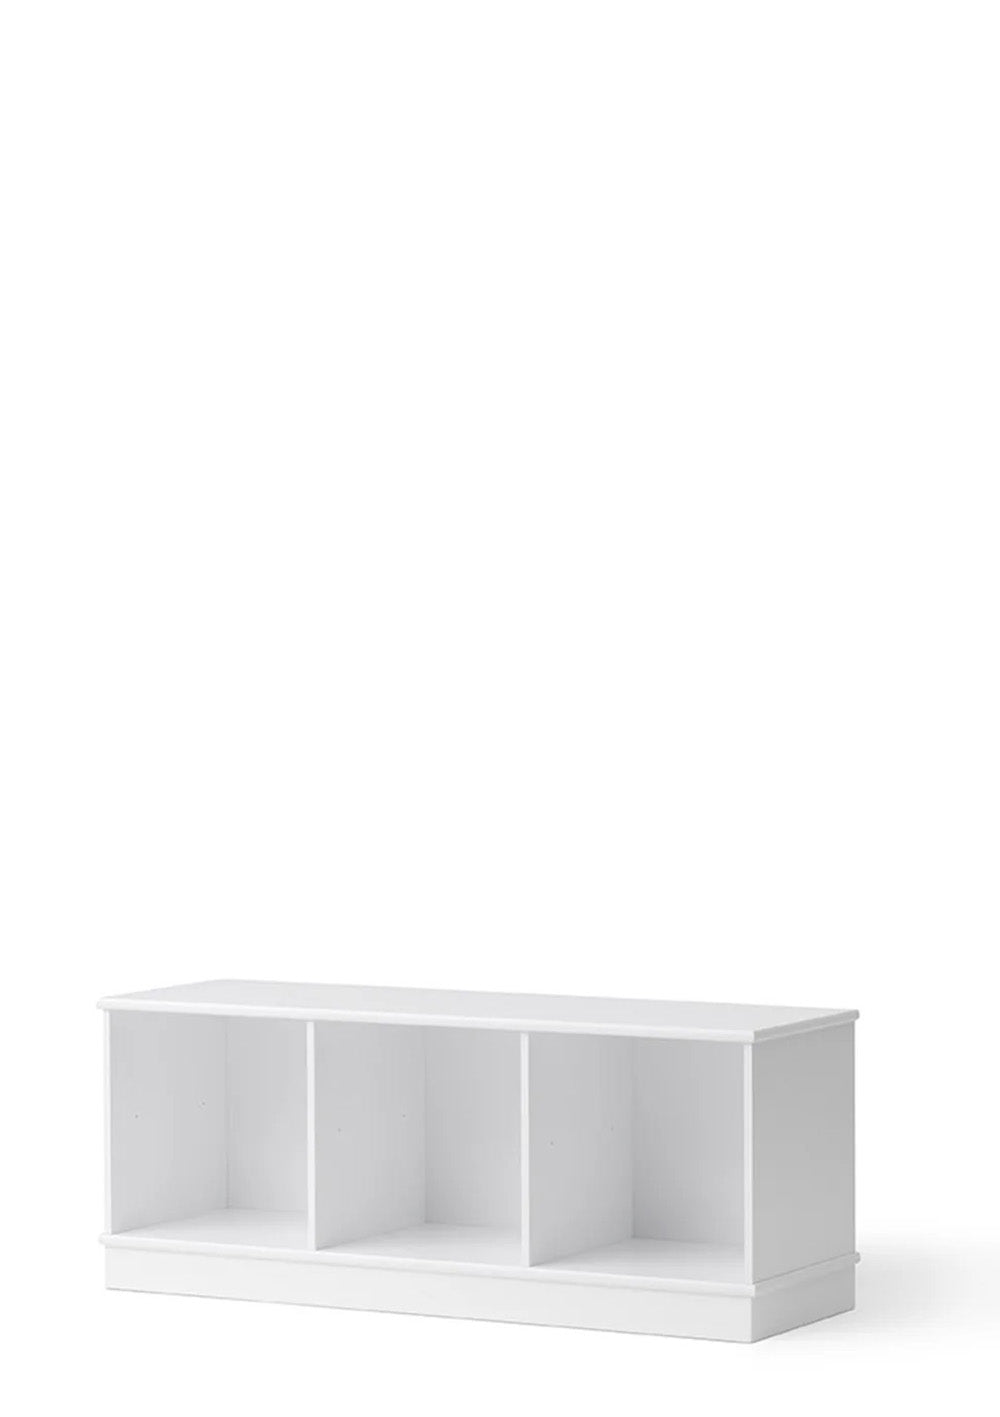 'Wood' Regal horizontal 3x1 mit Sockel weiß